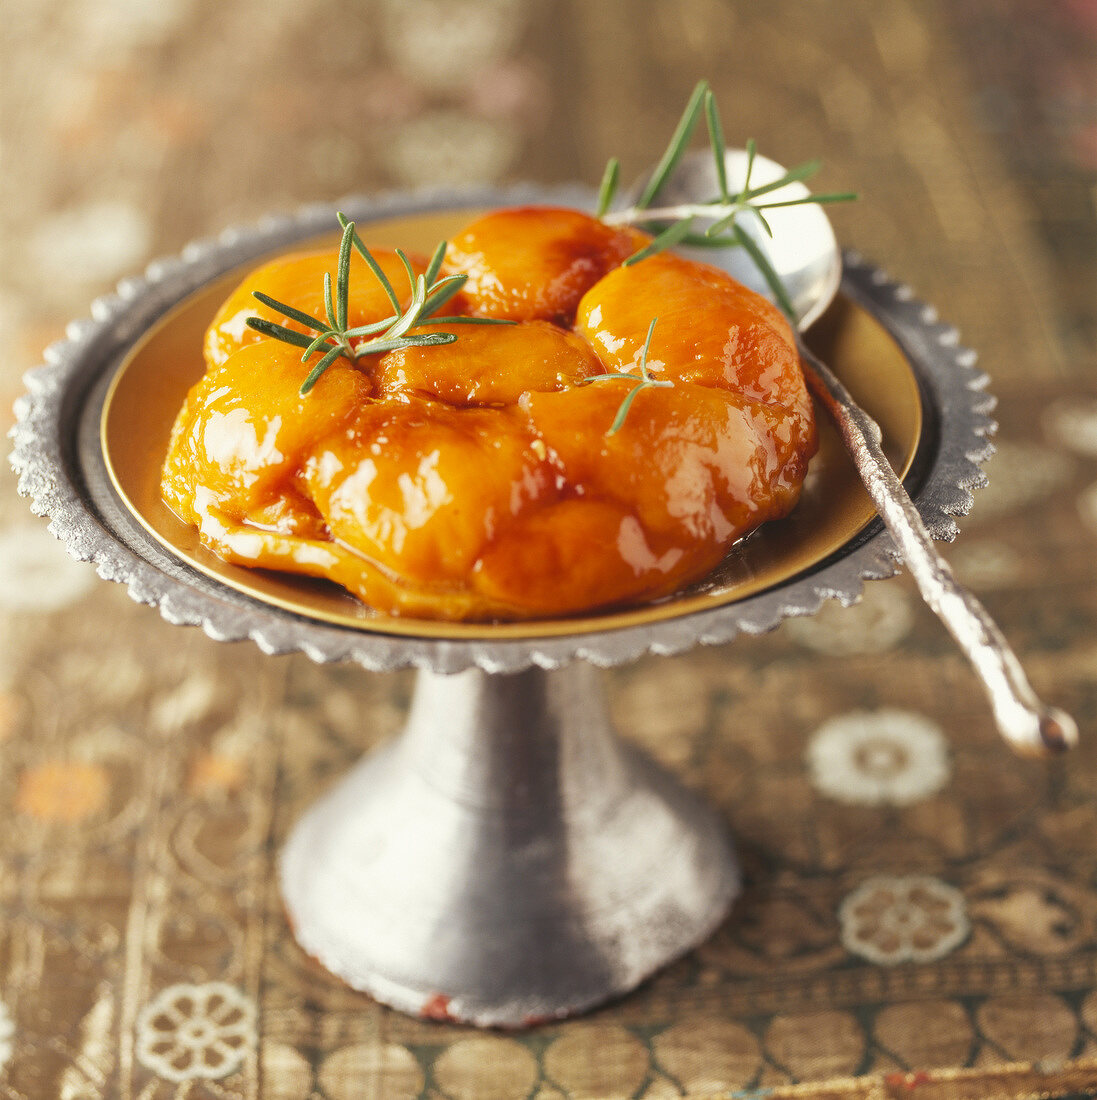 Apricot tatin tart with rosemary